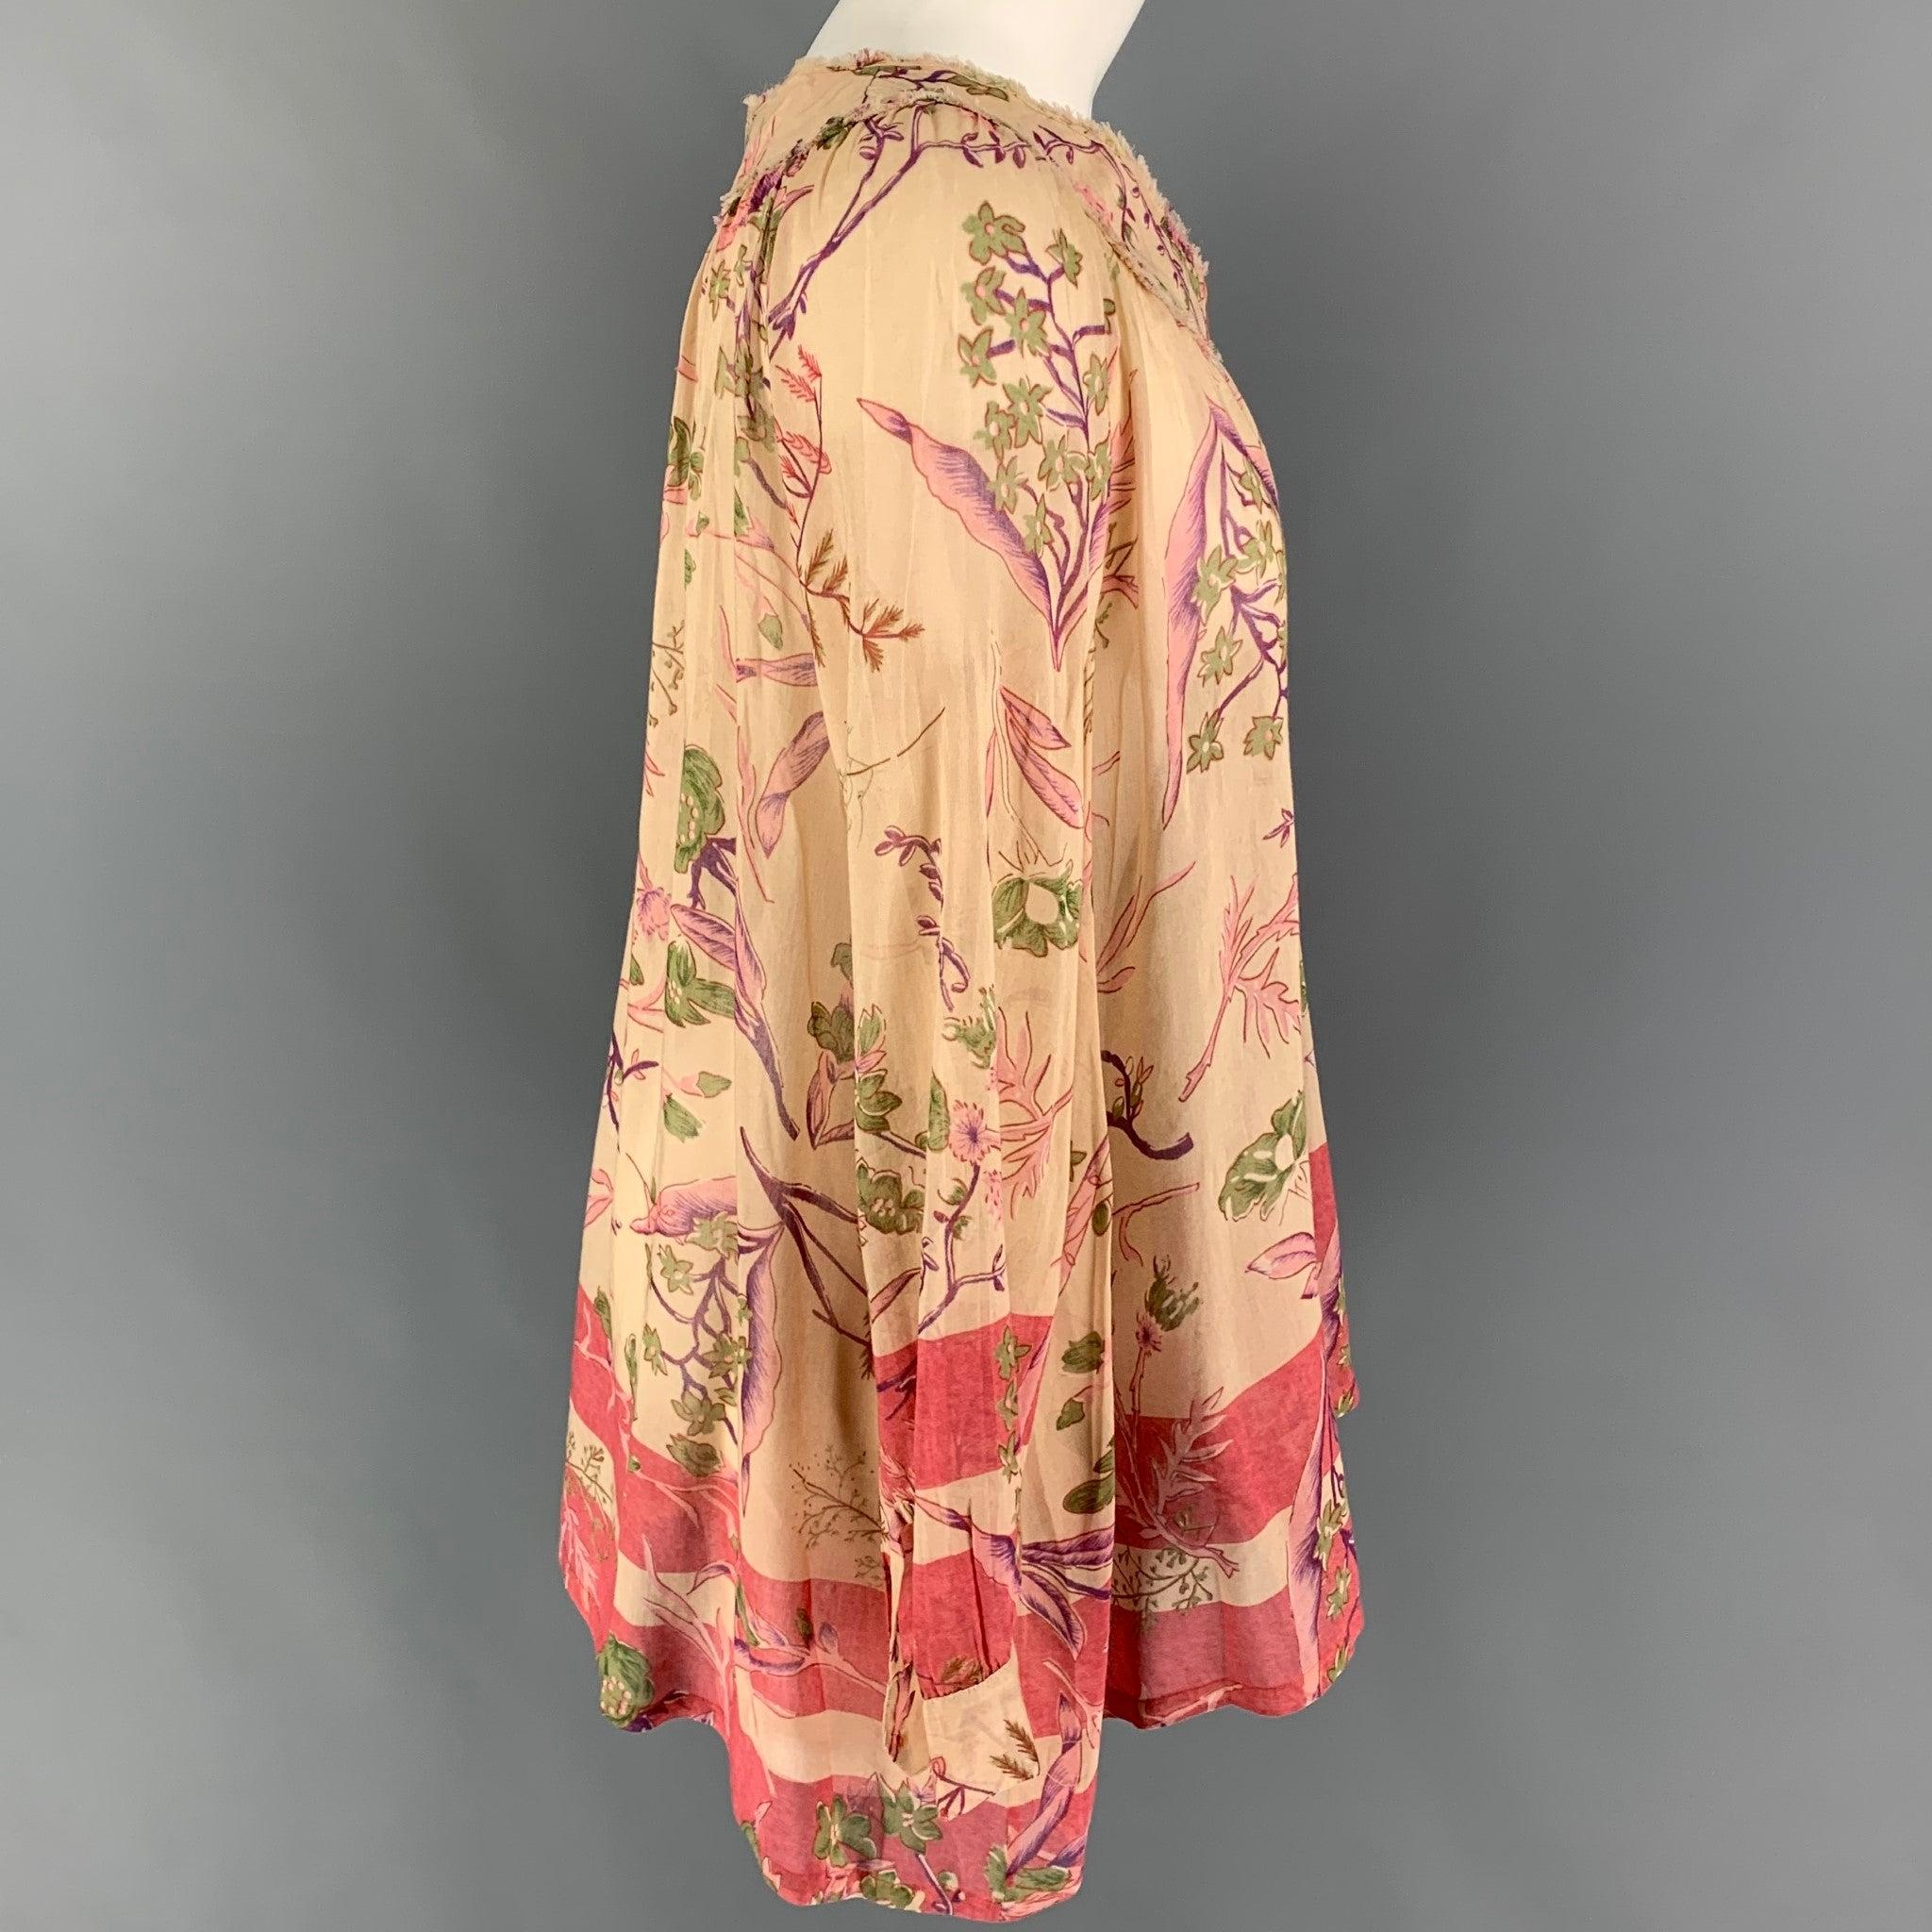 La blouse DONNA KARAN est réalisée en soie florale beige et imprimée. Elle présente un style tunique, des bords bruts et une fermeture boutonnée.
Très bien
Etat d'occasion. 

Marqué :   6 

Mesures : 
 
Épaule : 16 pouces  Poitrine : 42 pouces 